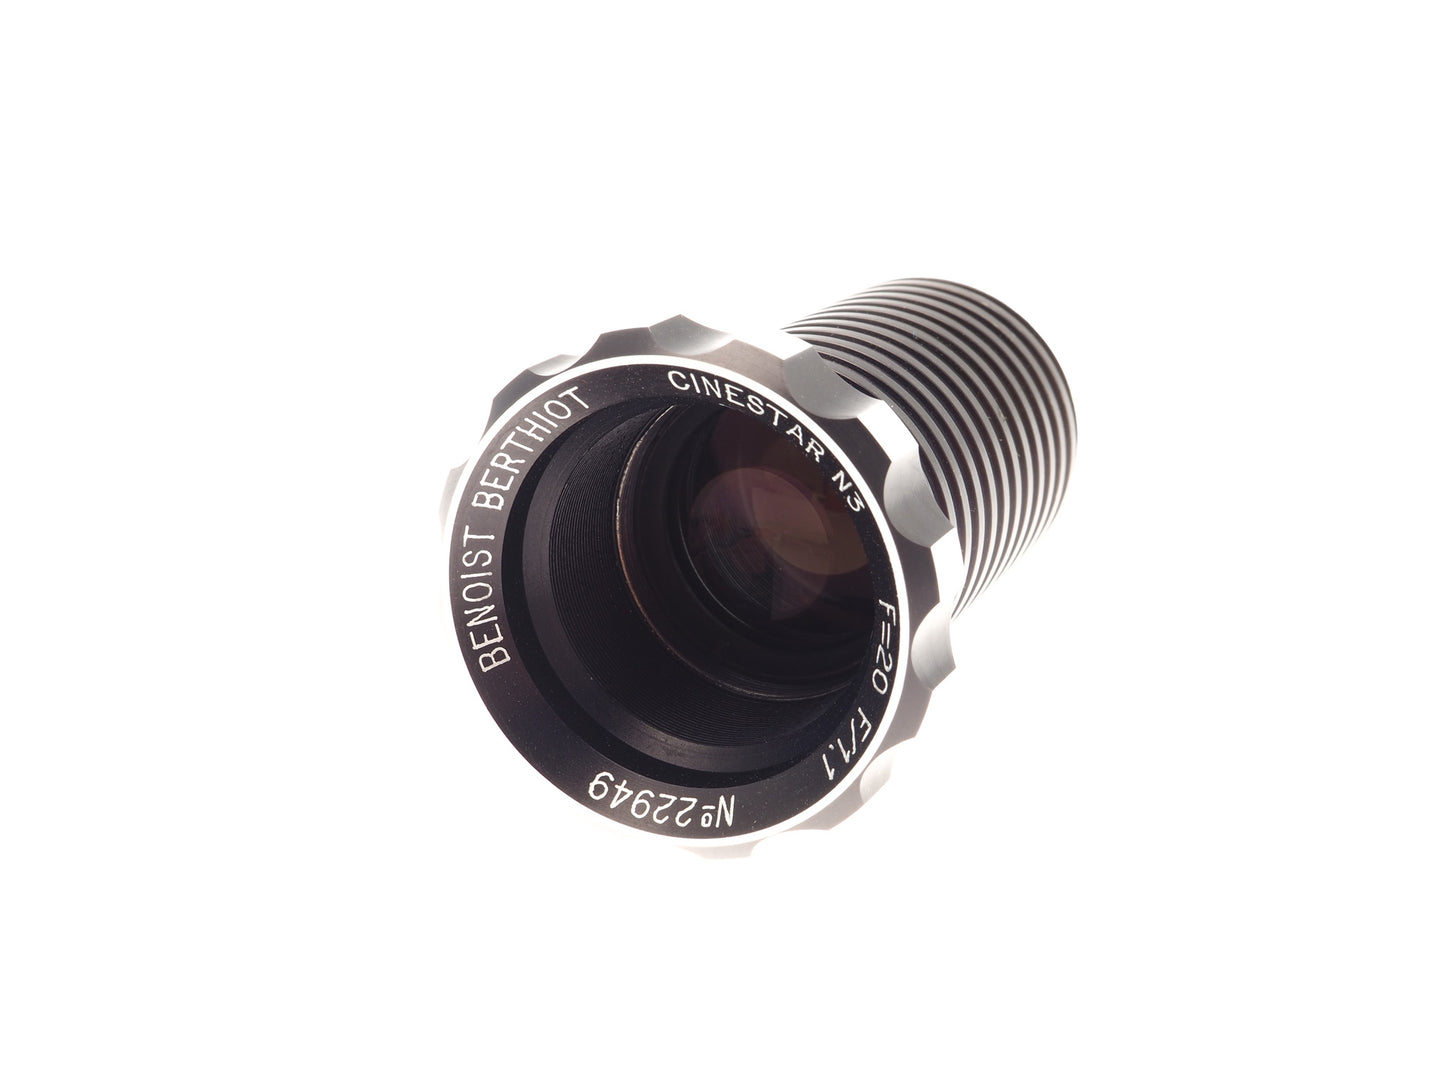 Benoist Berthiot 20mm f1.1 Cinestar N3 - Lens